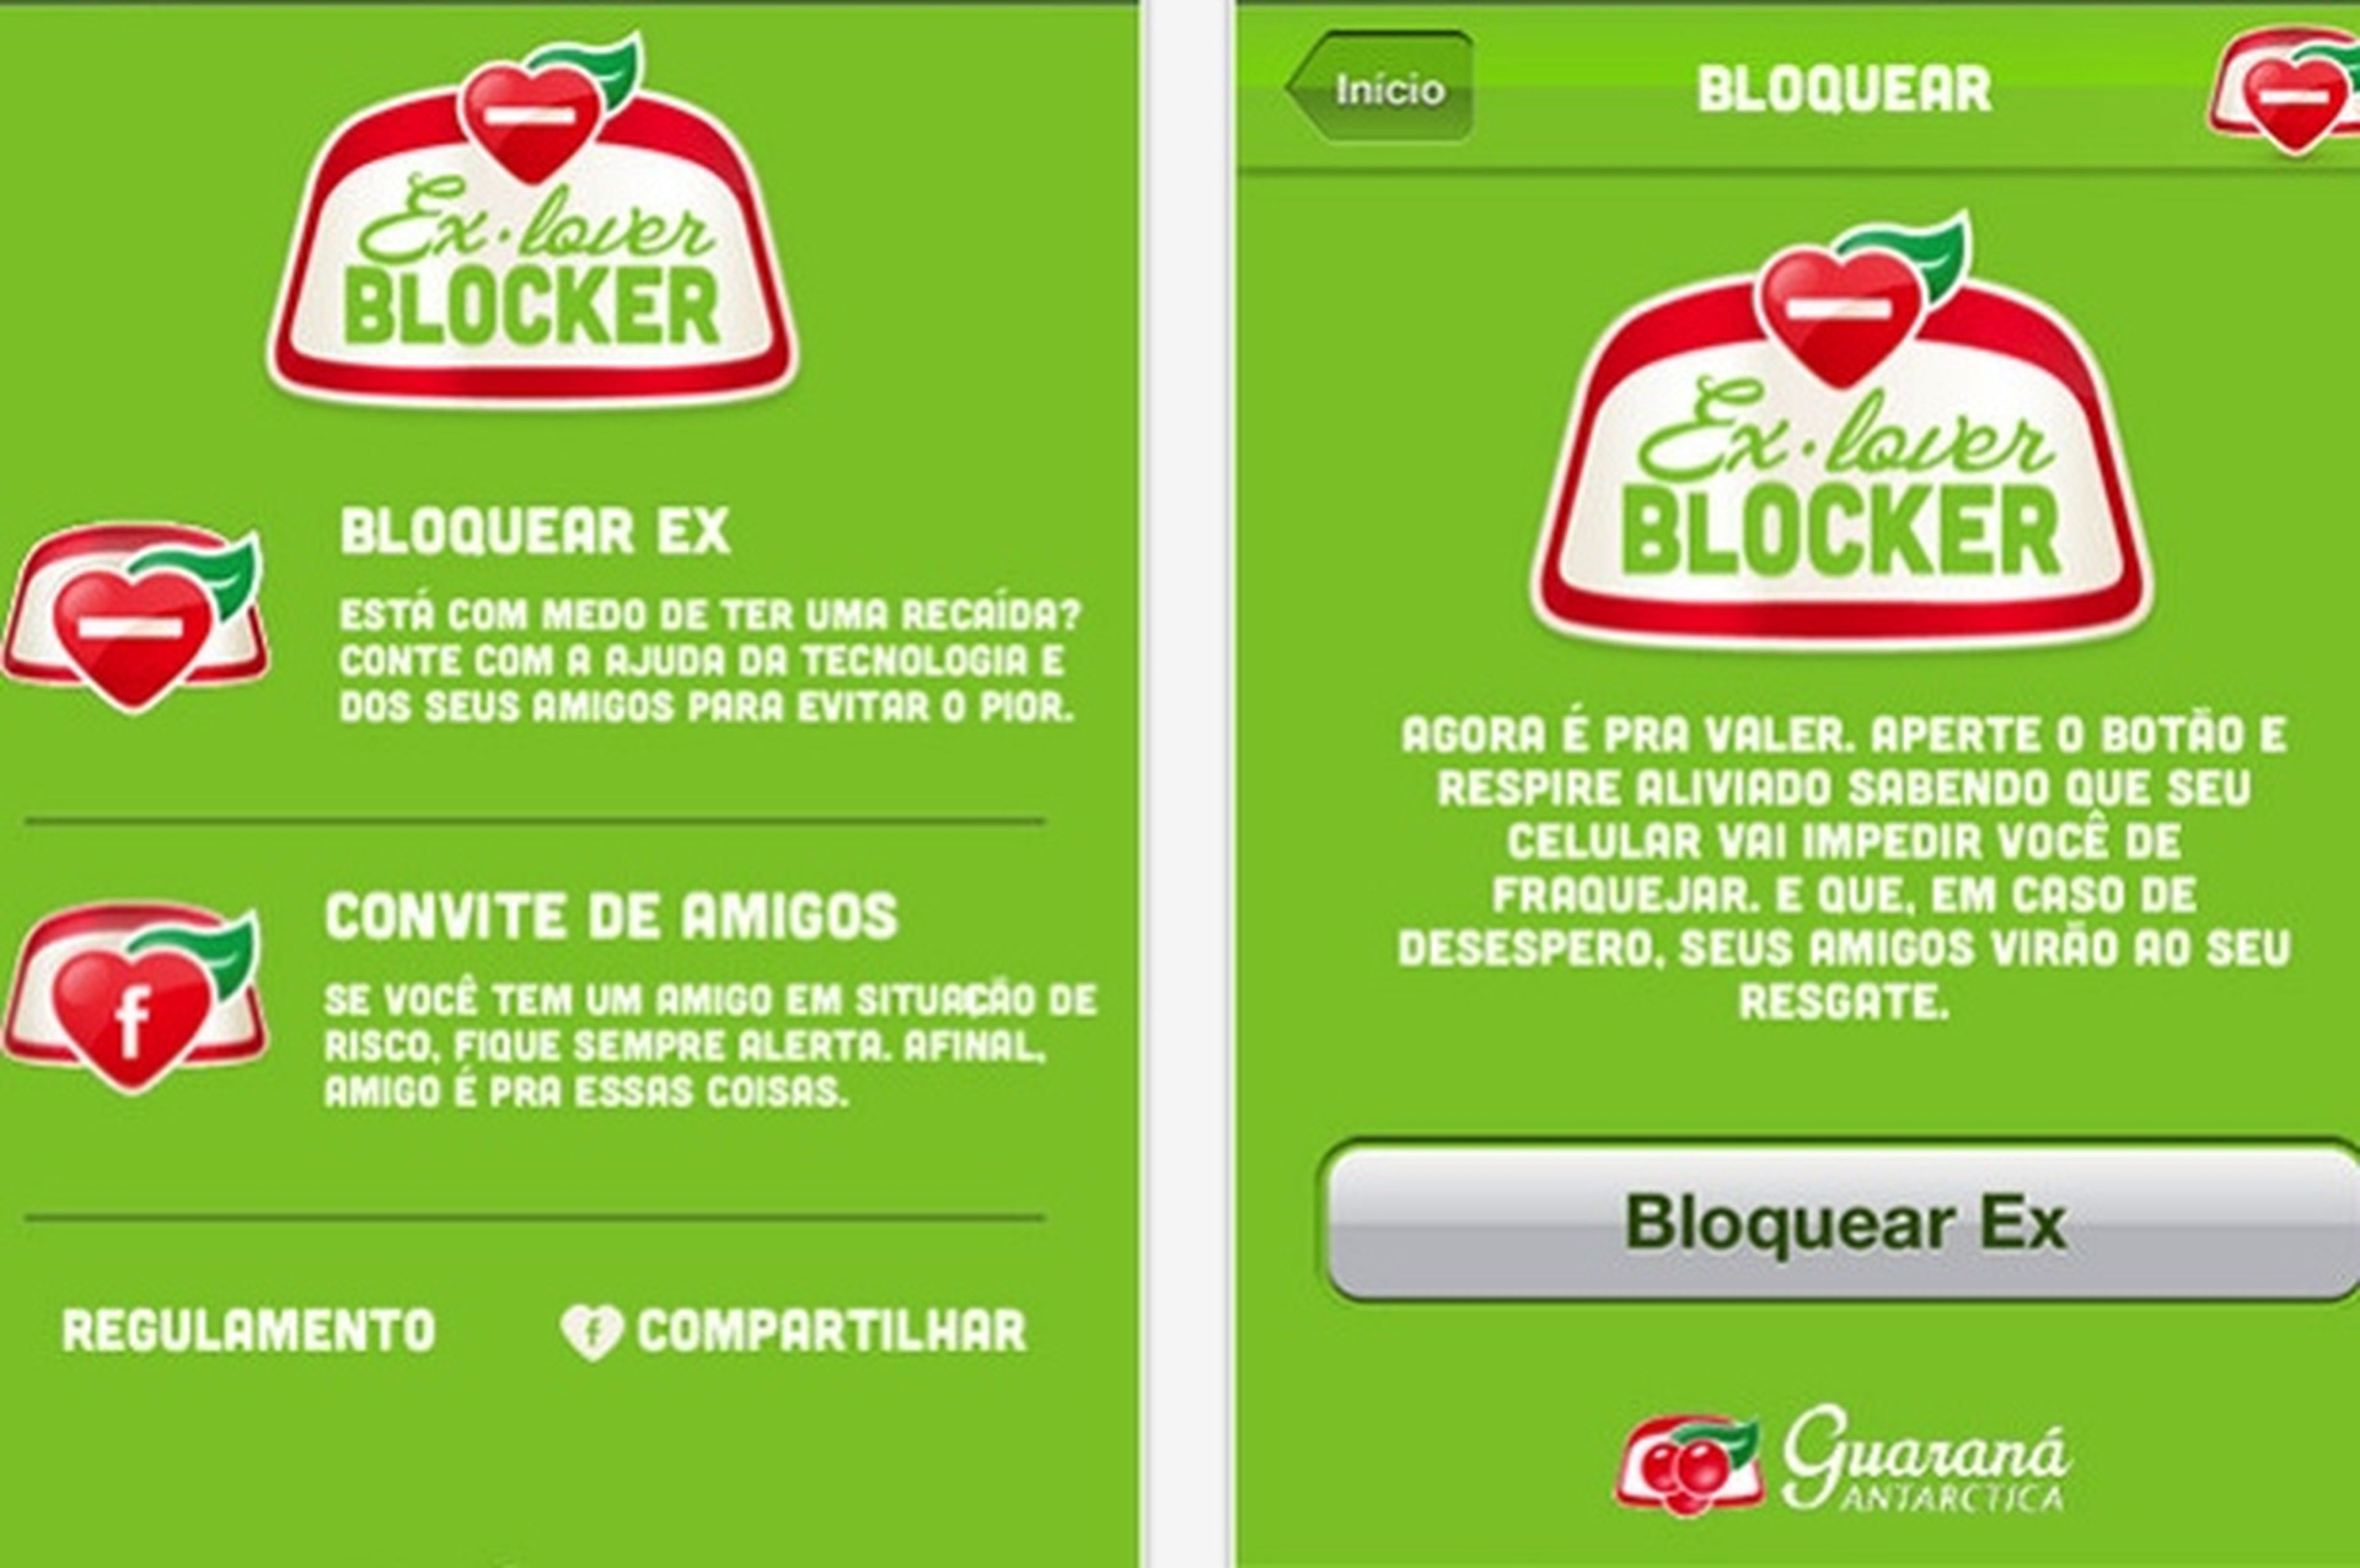 App ex lover blocker